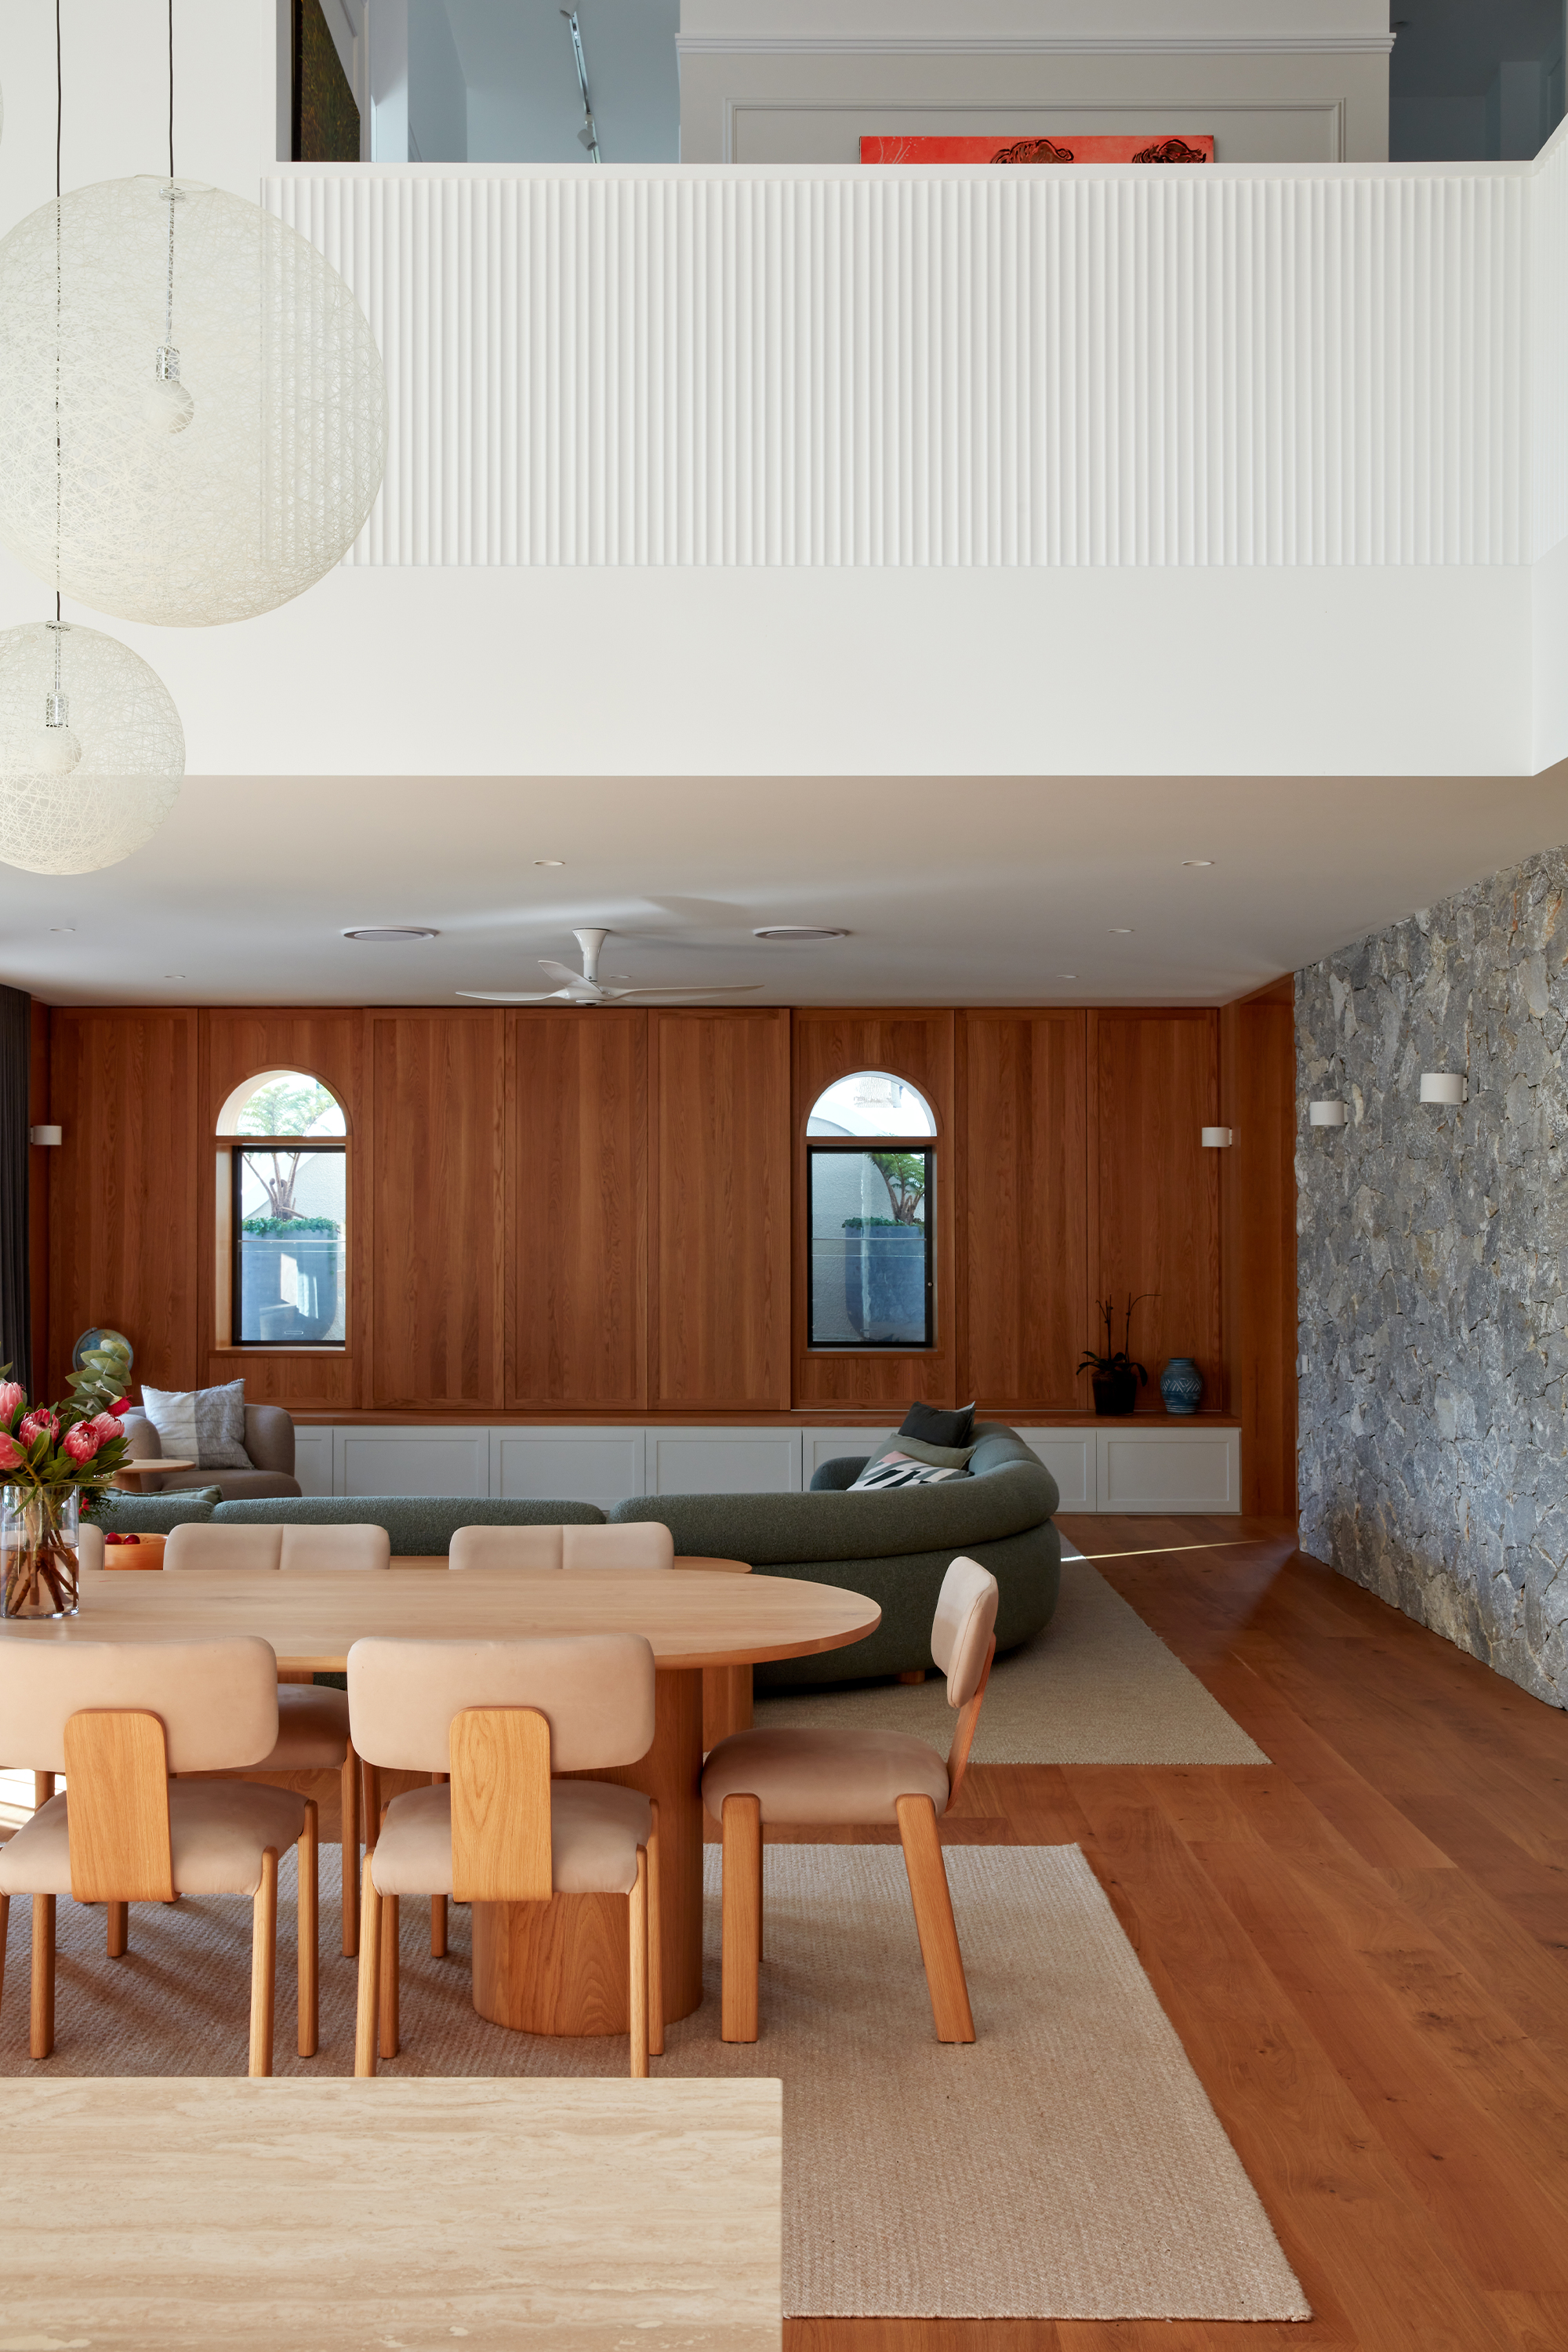 Glenrae Residence by Shaun Lockyer Architects Brisbane